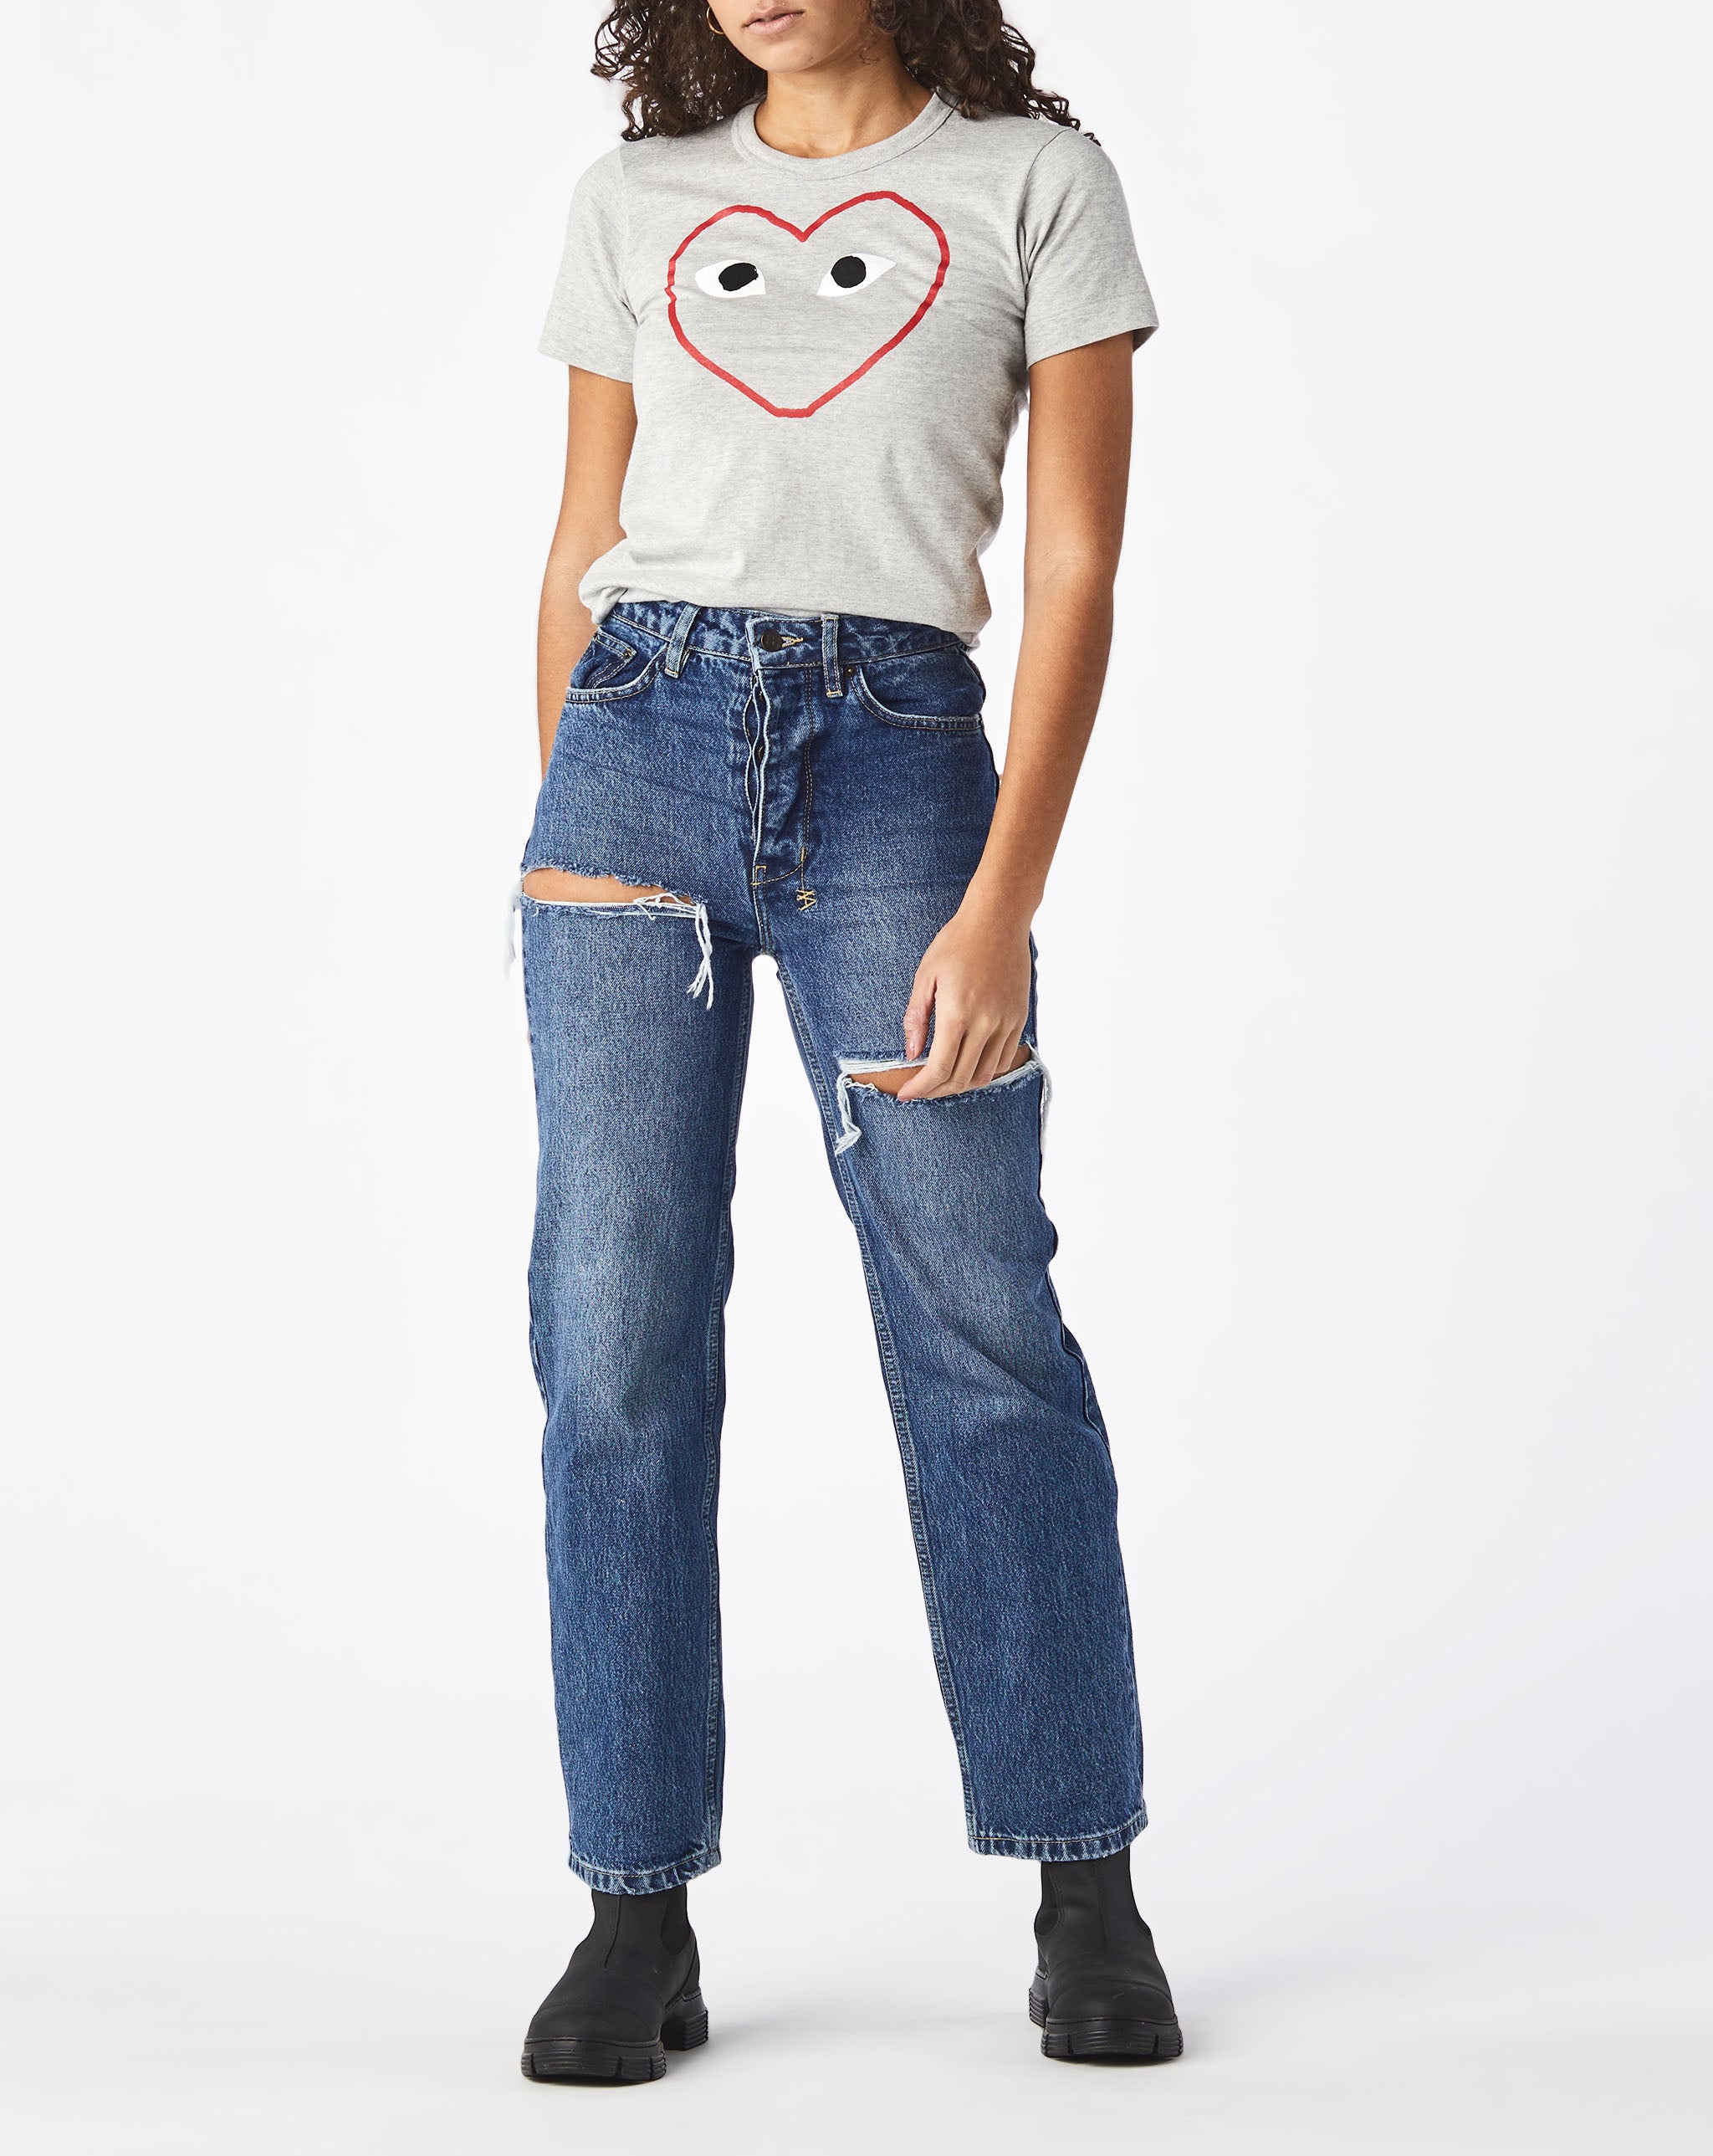 Womens Double Camo Heart T-Shirt Women's Logo Print T-Shirt  - Cheap Urlfreeze Jordan outlet